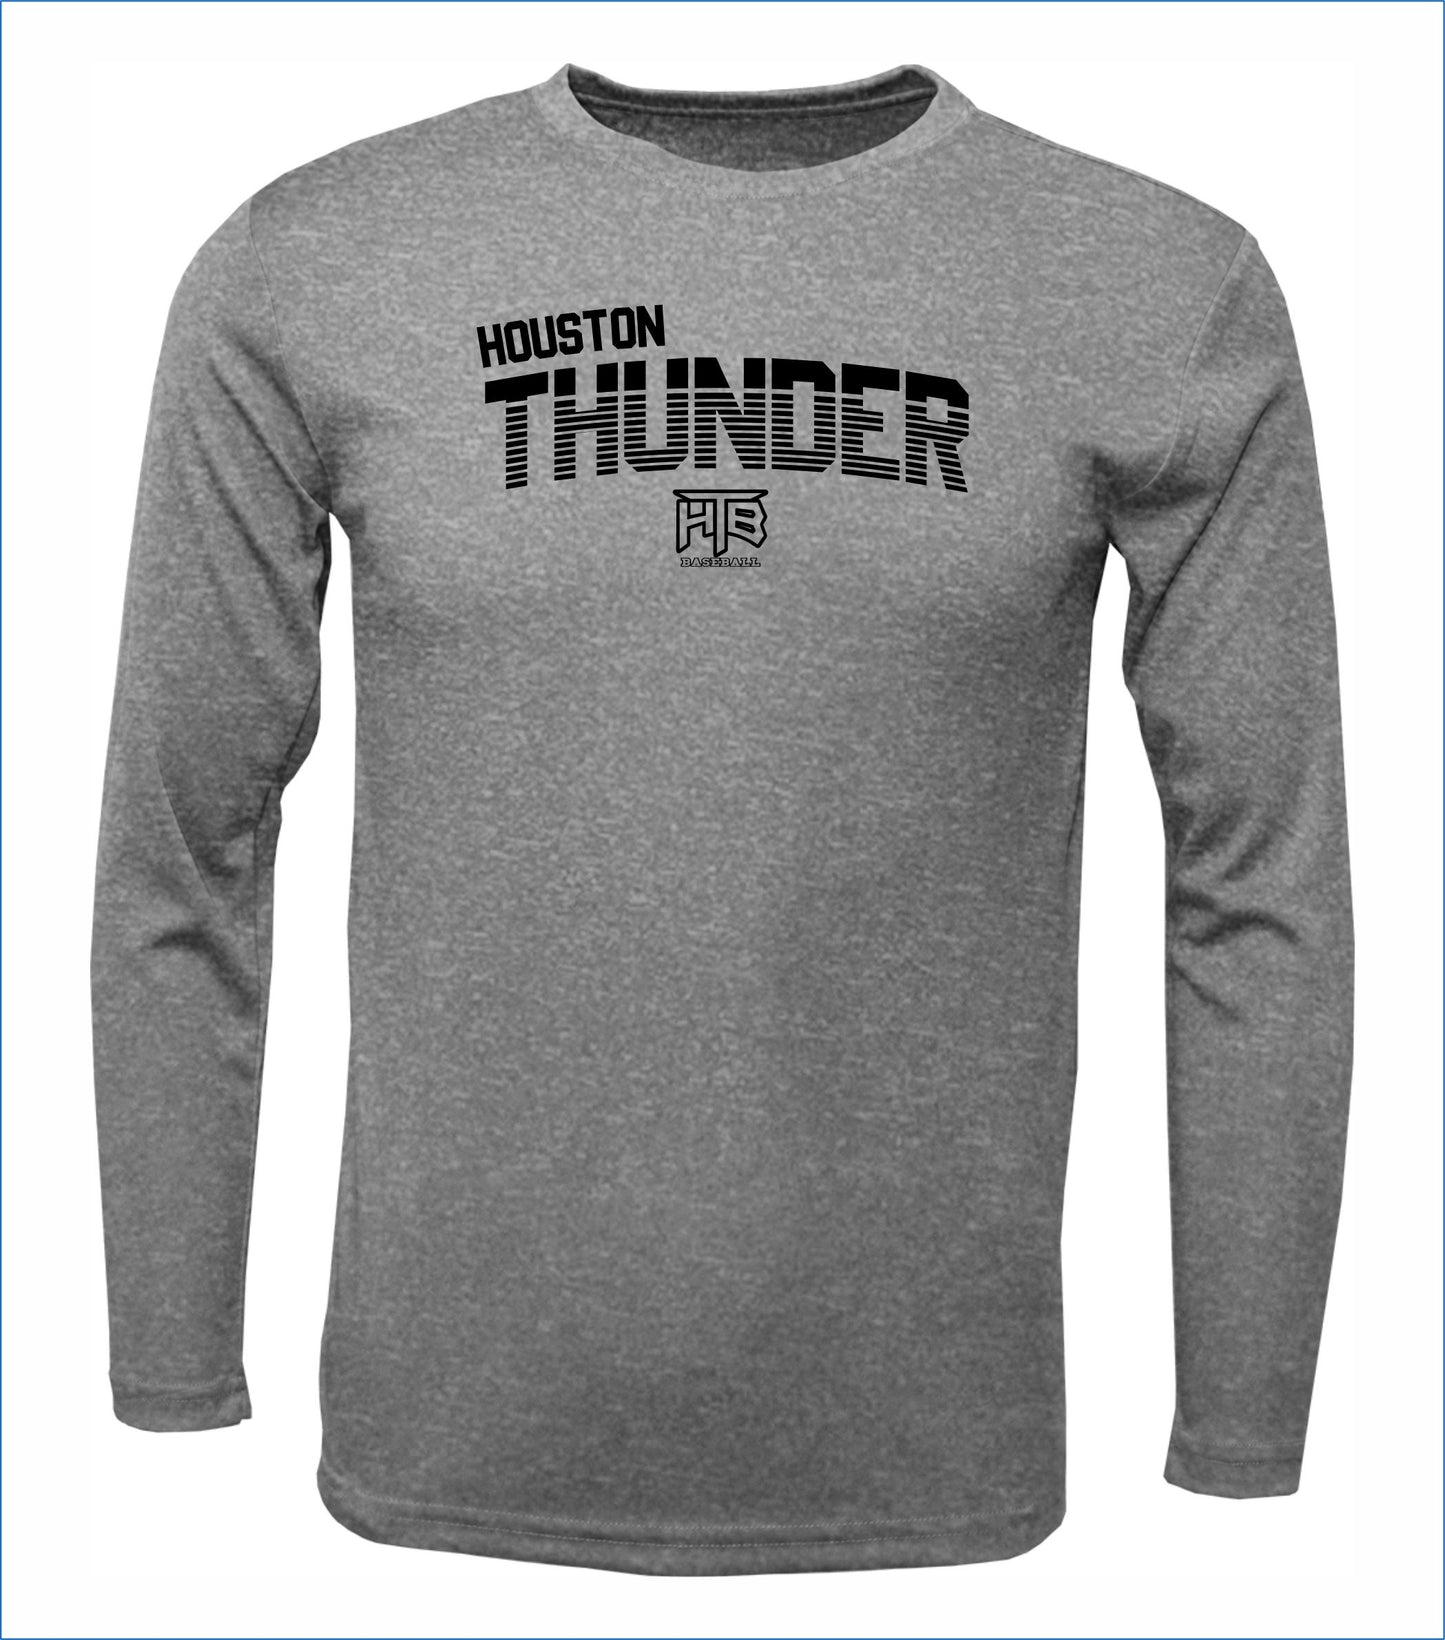 Houston Thunder Long Sleeve Cotton Shirt